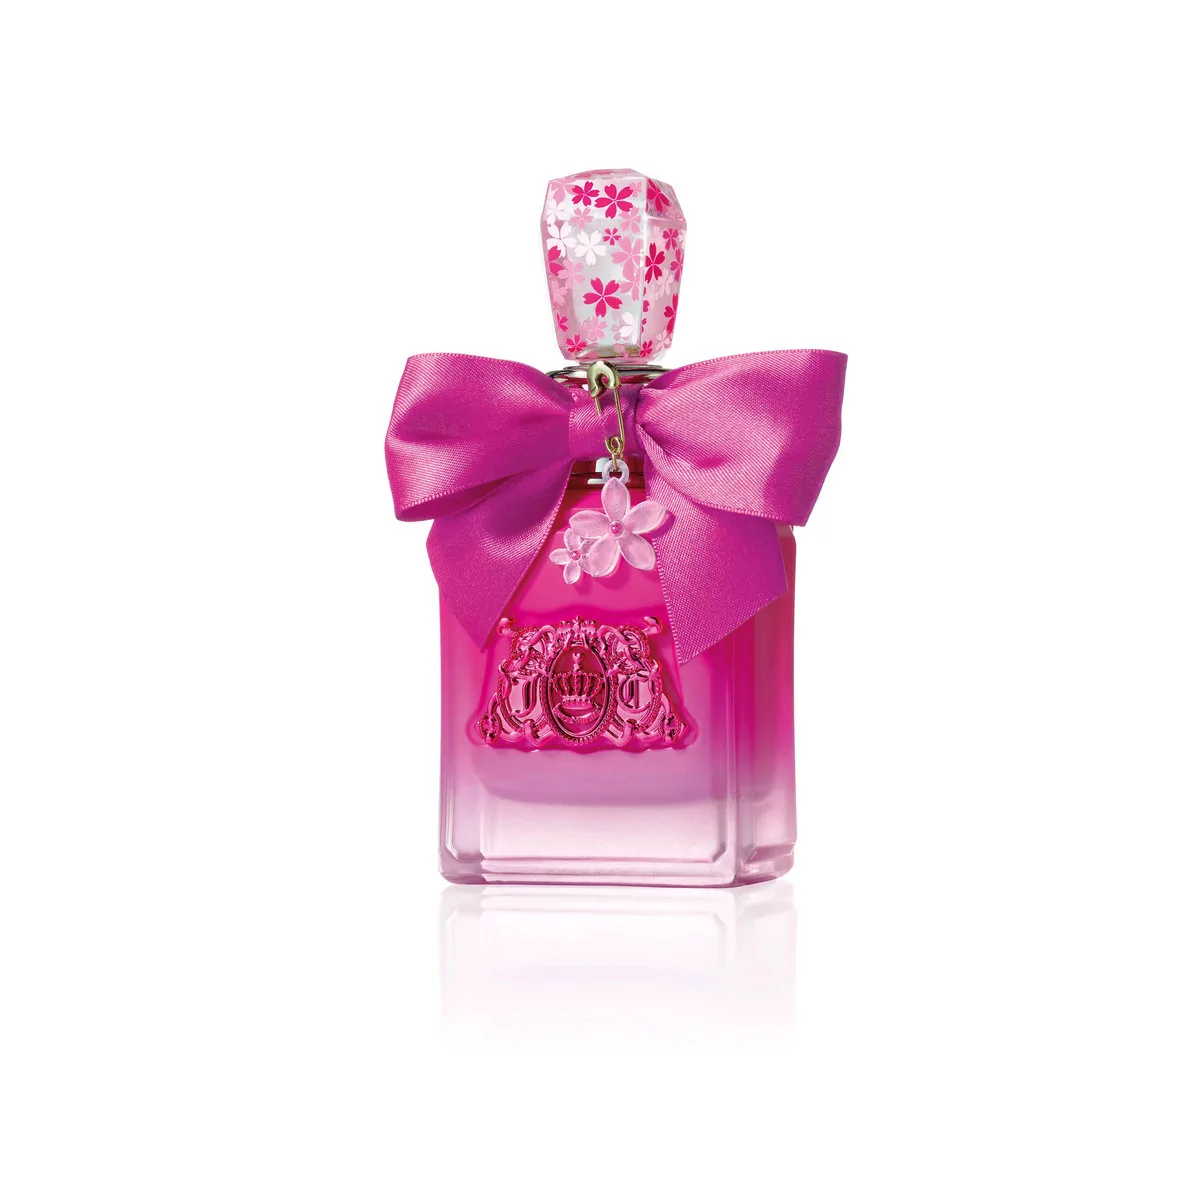 Juicy Couture Viva LA Juicy Petals Please woda perfumowana 50 ml (719346260060)